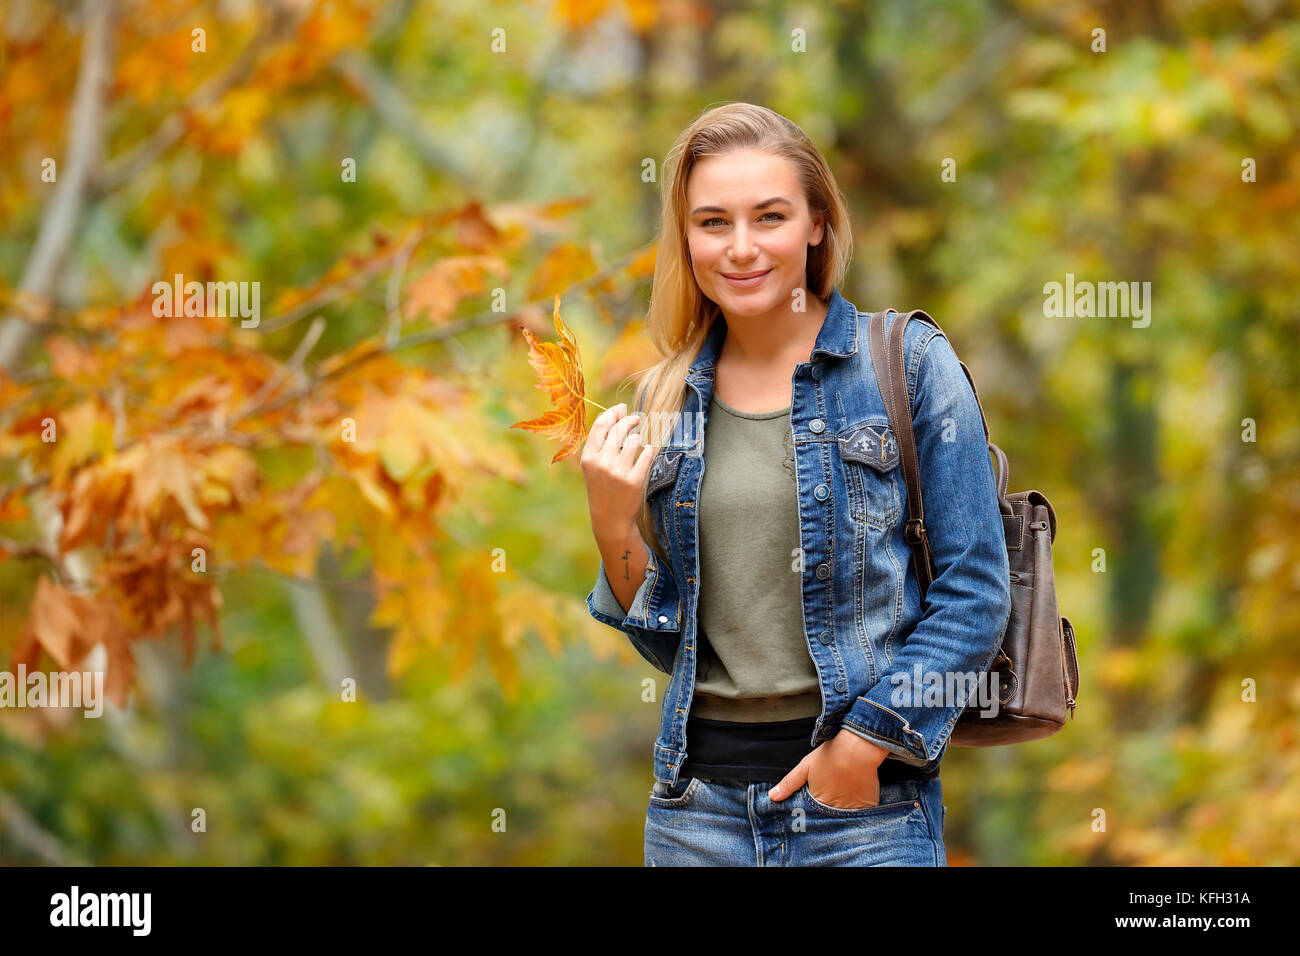 Hübsches blondes Mädchen mit schönen trockenen Maple Leaf in der Hand im Herbst Wald, enjoyng Schönheit von Fallen, Wetter, Wochenende im Park Stockfoto